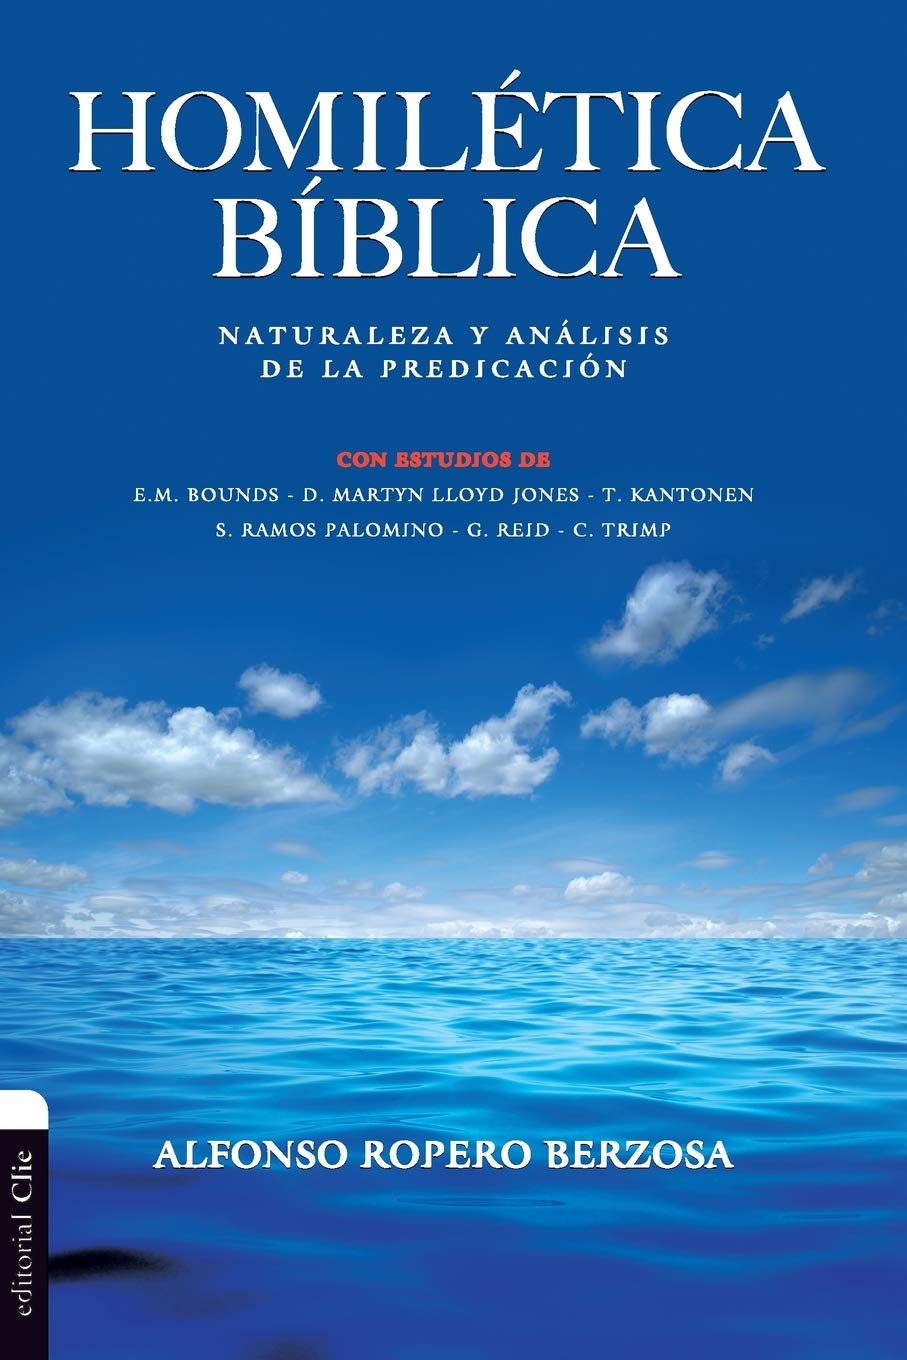 Homilética Bíblica: Naturaleza y análisis de la predicación 